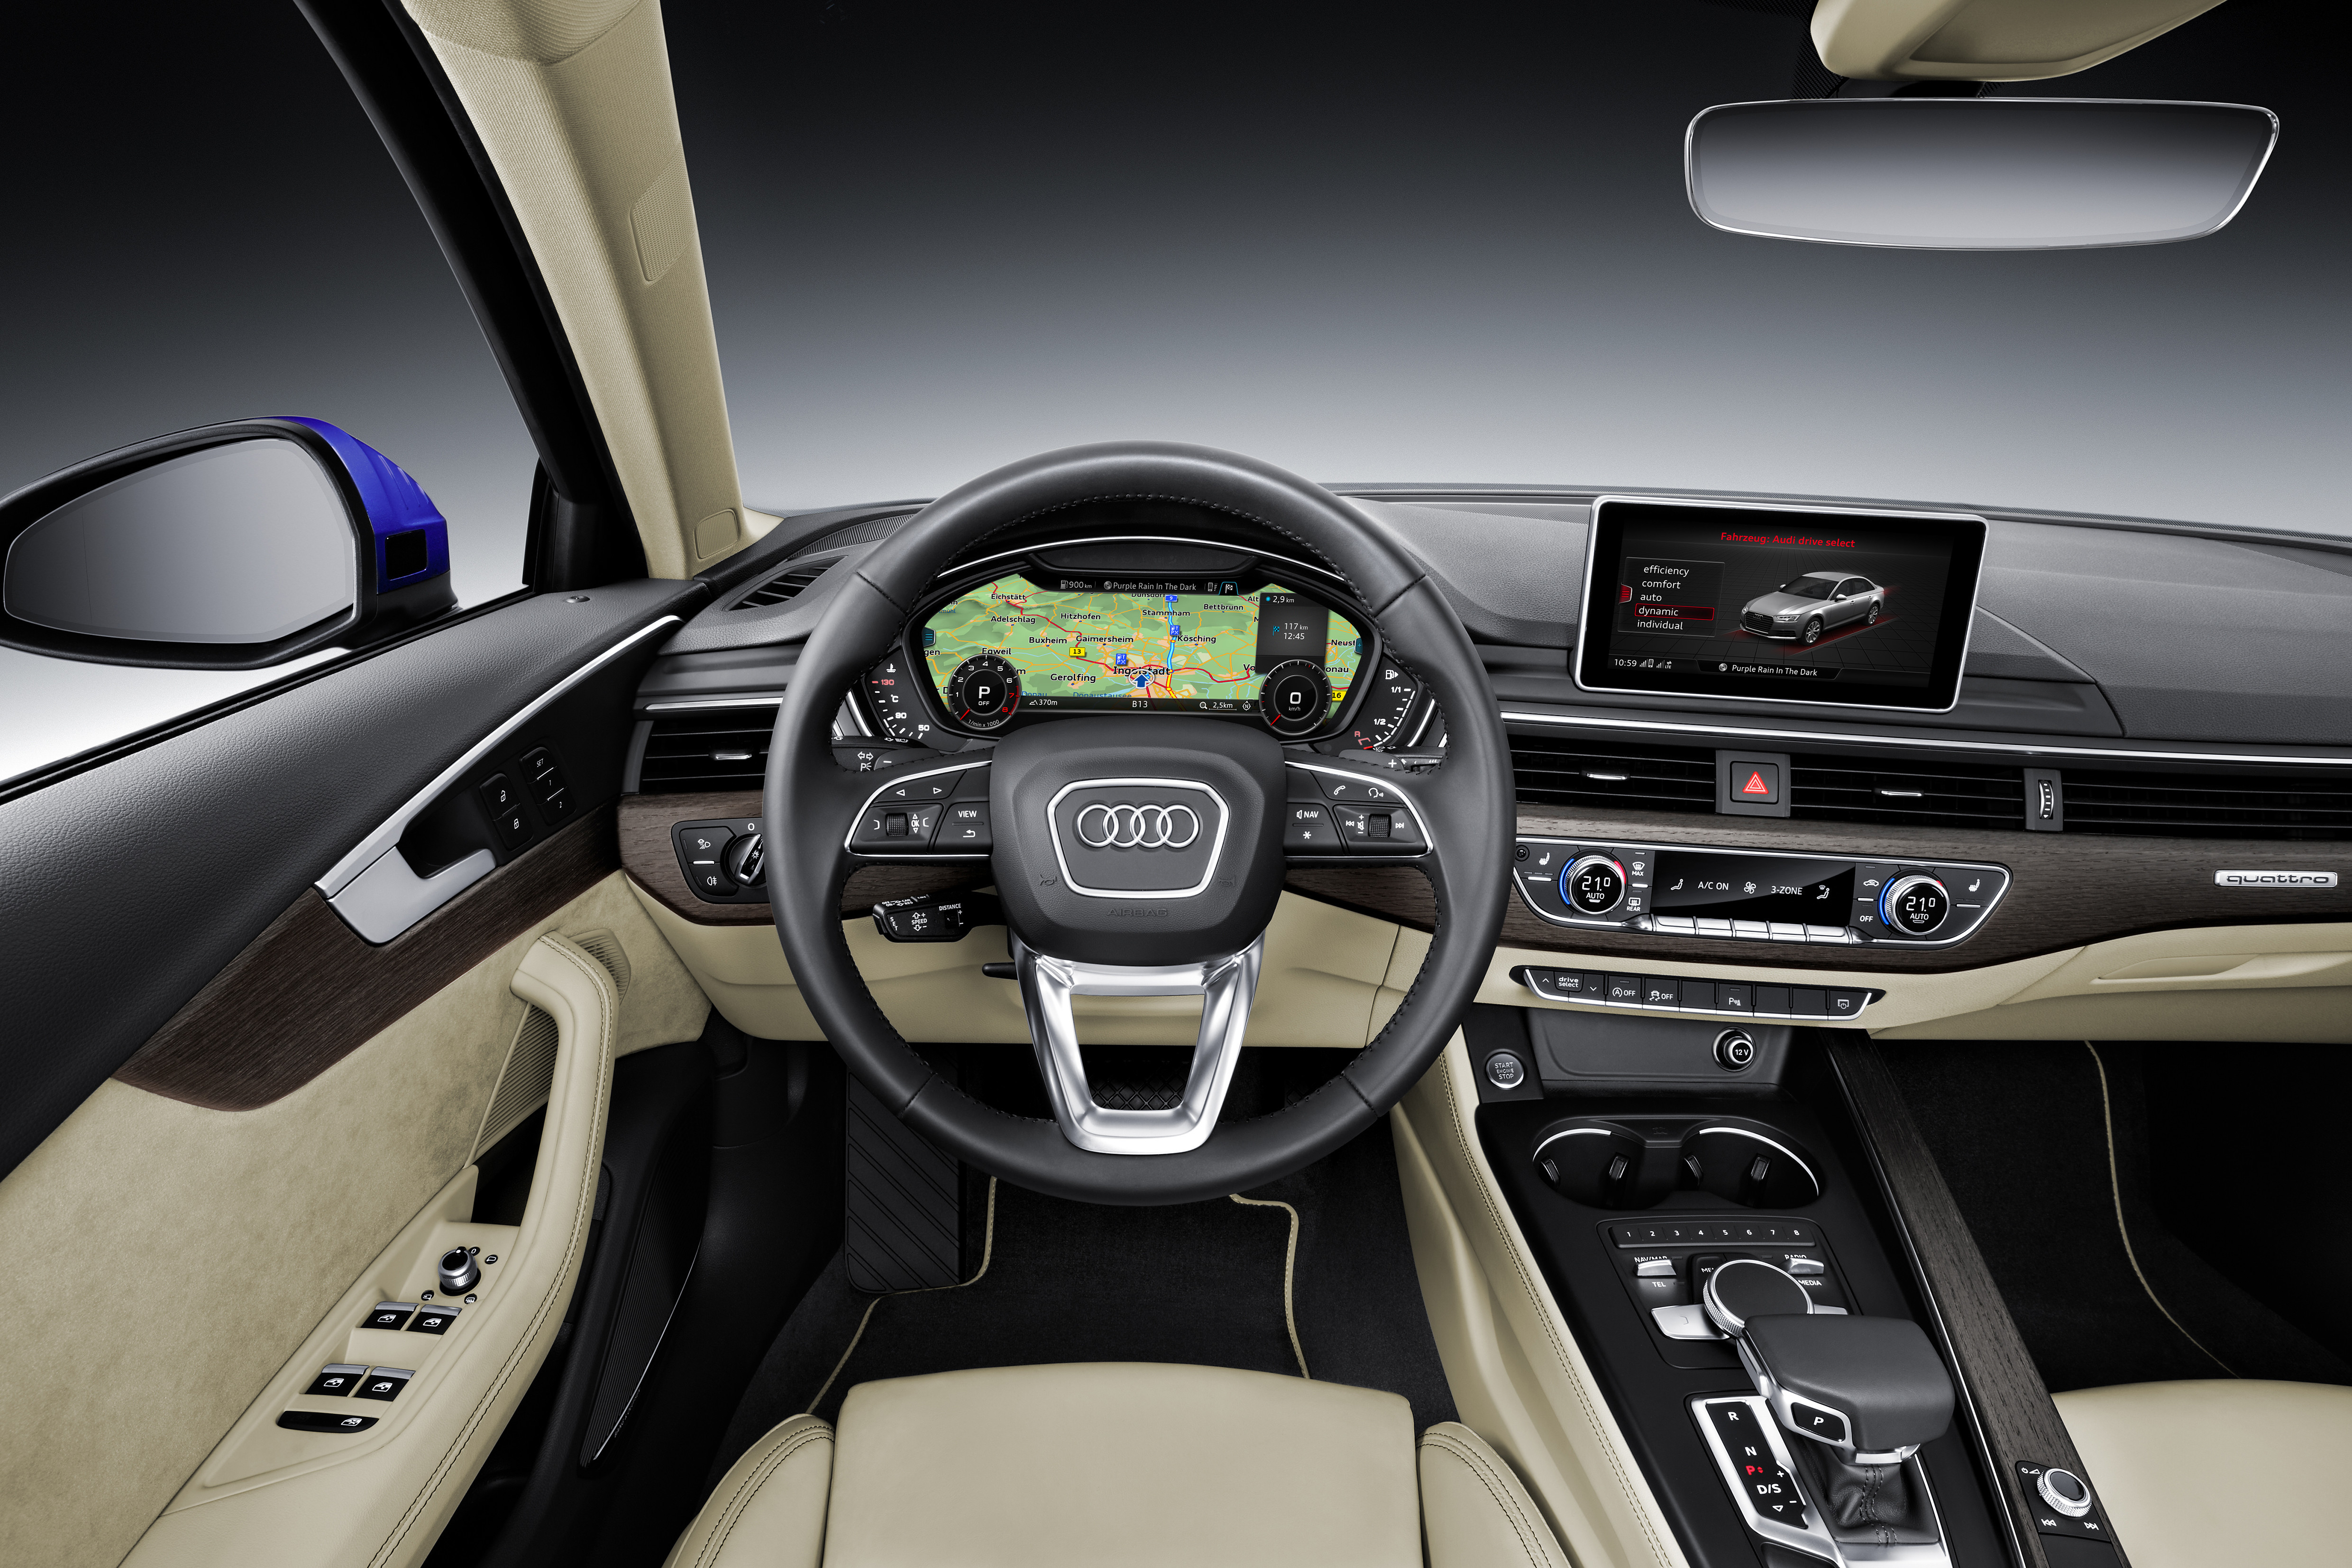 2015 2016 года. Audi a4 Interior. Audi a4 b9 2016. Audi a4 2015. Ауди а4 2016 салон.